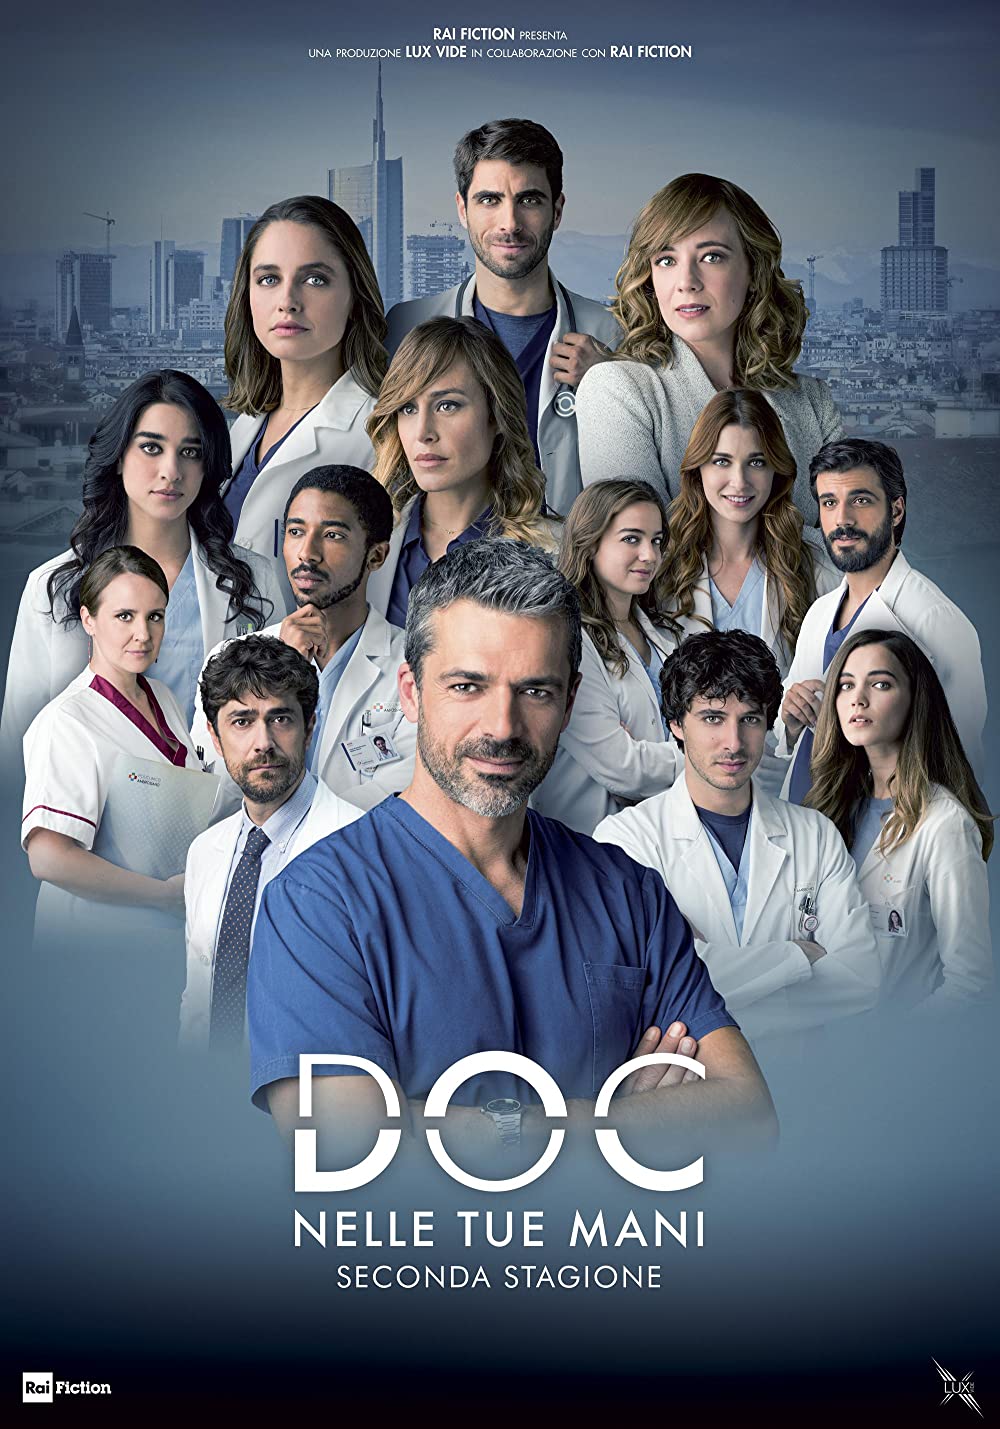 Doc – Nelle tue mani (2020)